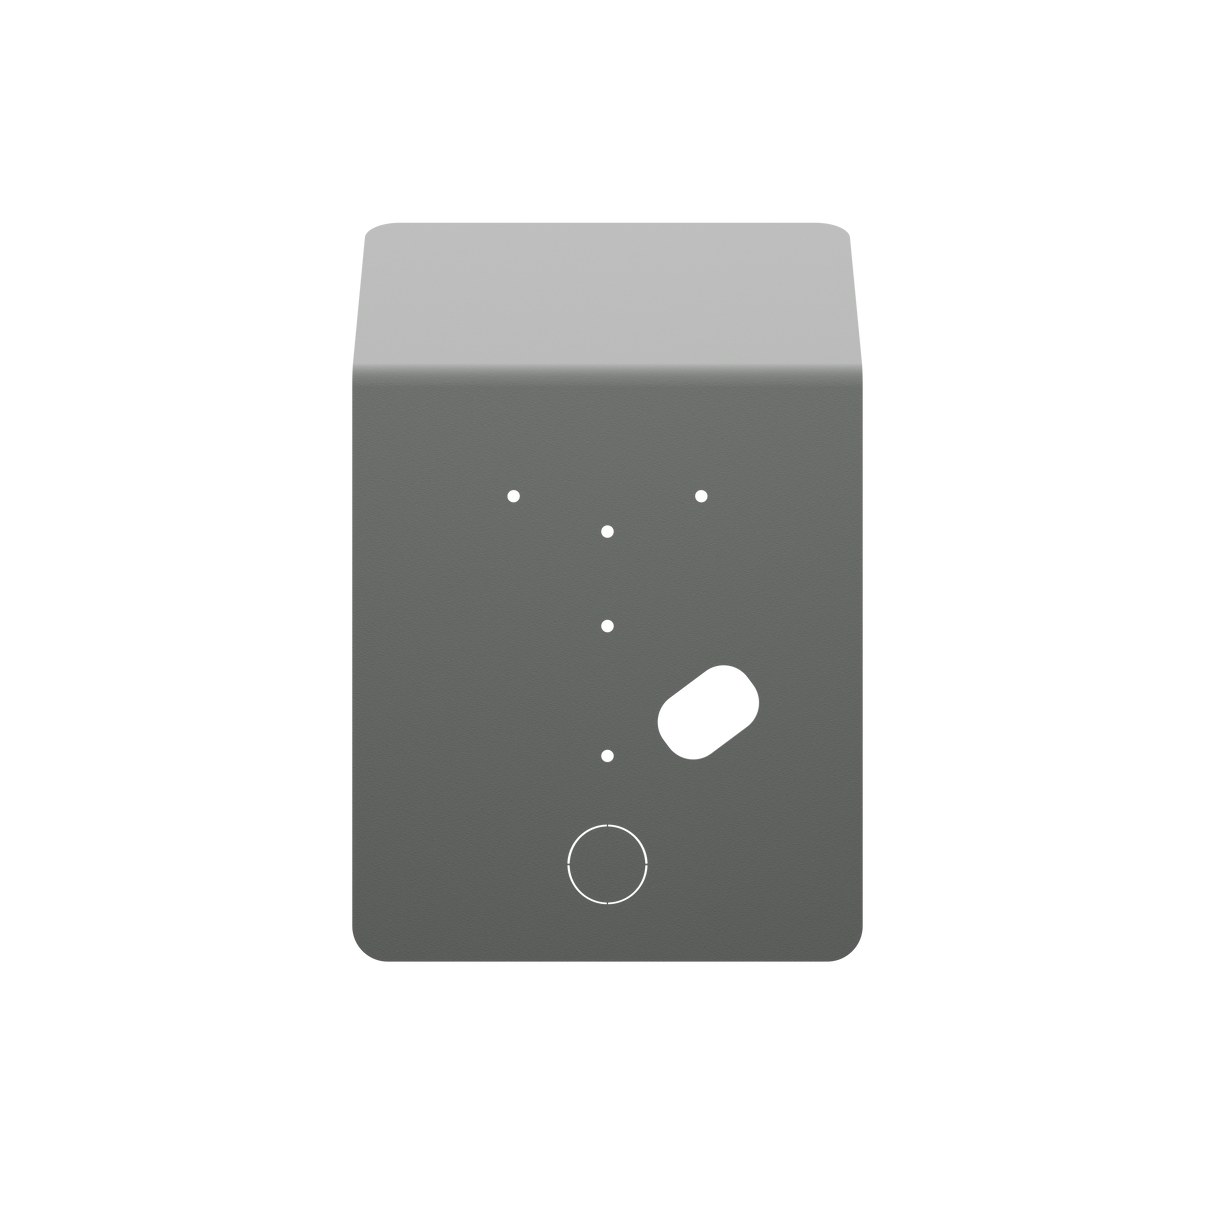 Wallbox Regenkappe für Montagepfosten - Sockel Eiffel Basic für Wallbox Pulsar Familie